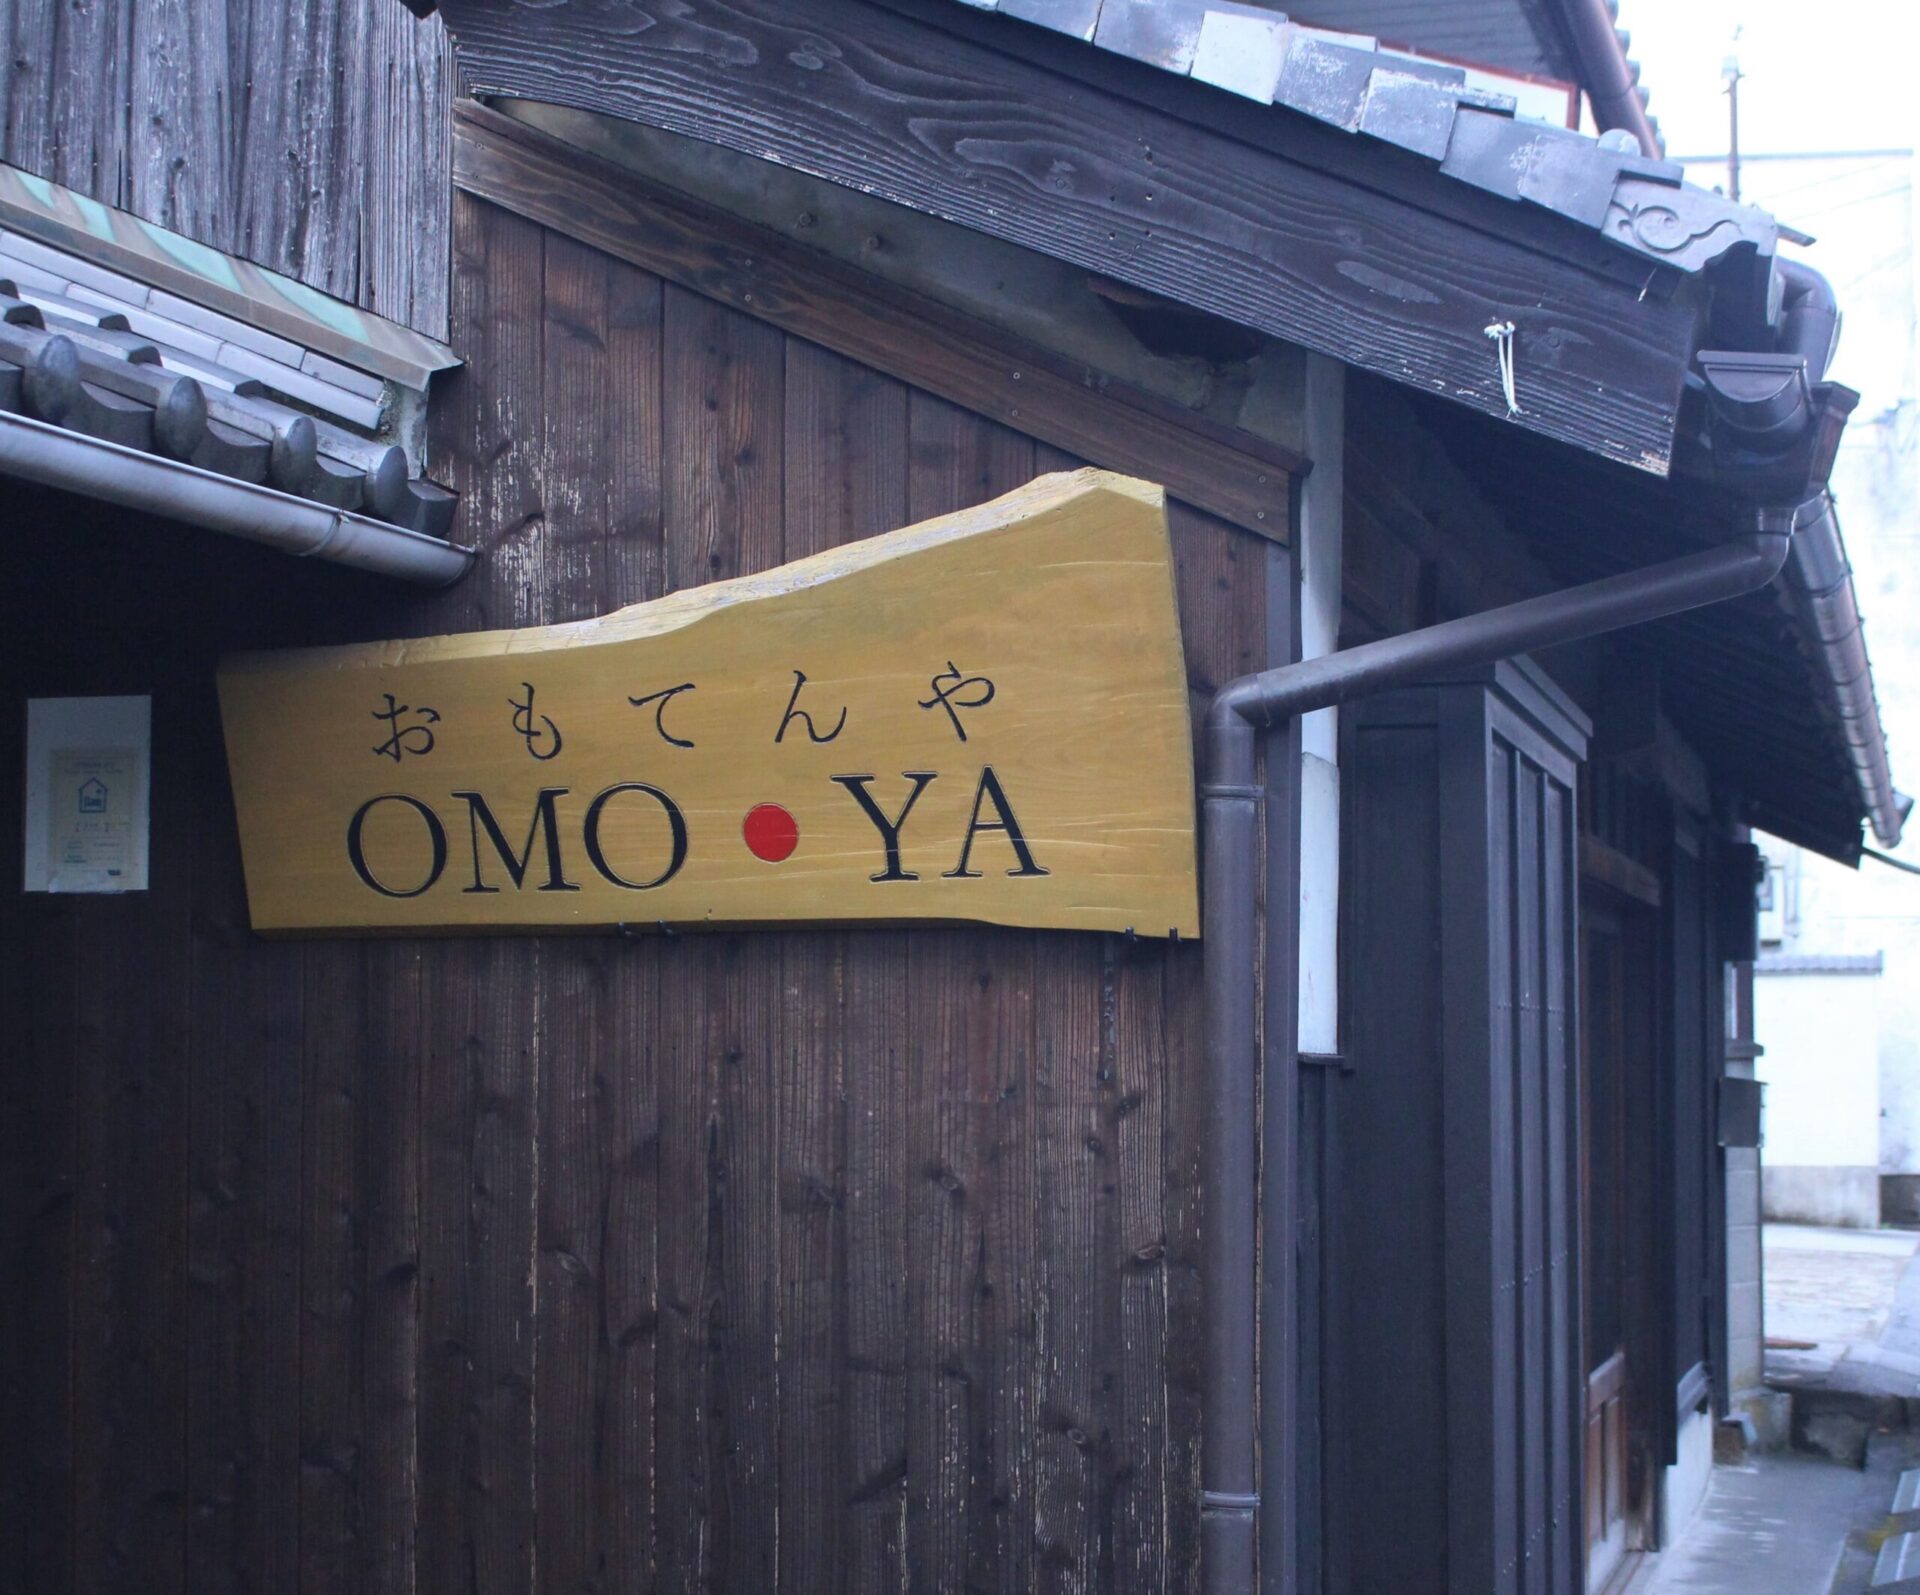 OMO・YA (おもてんや)看板、富田呉服店